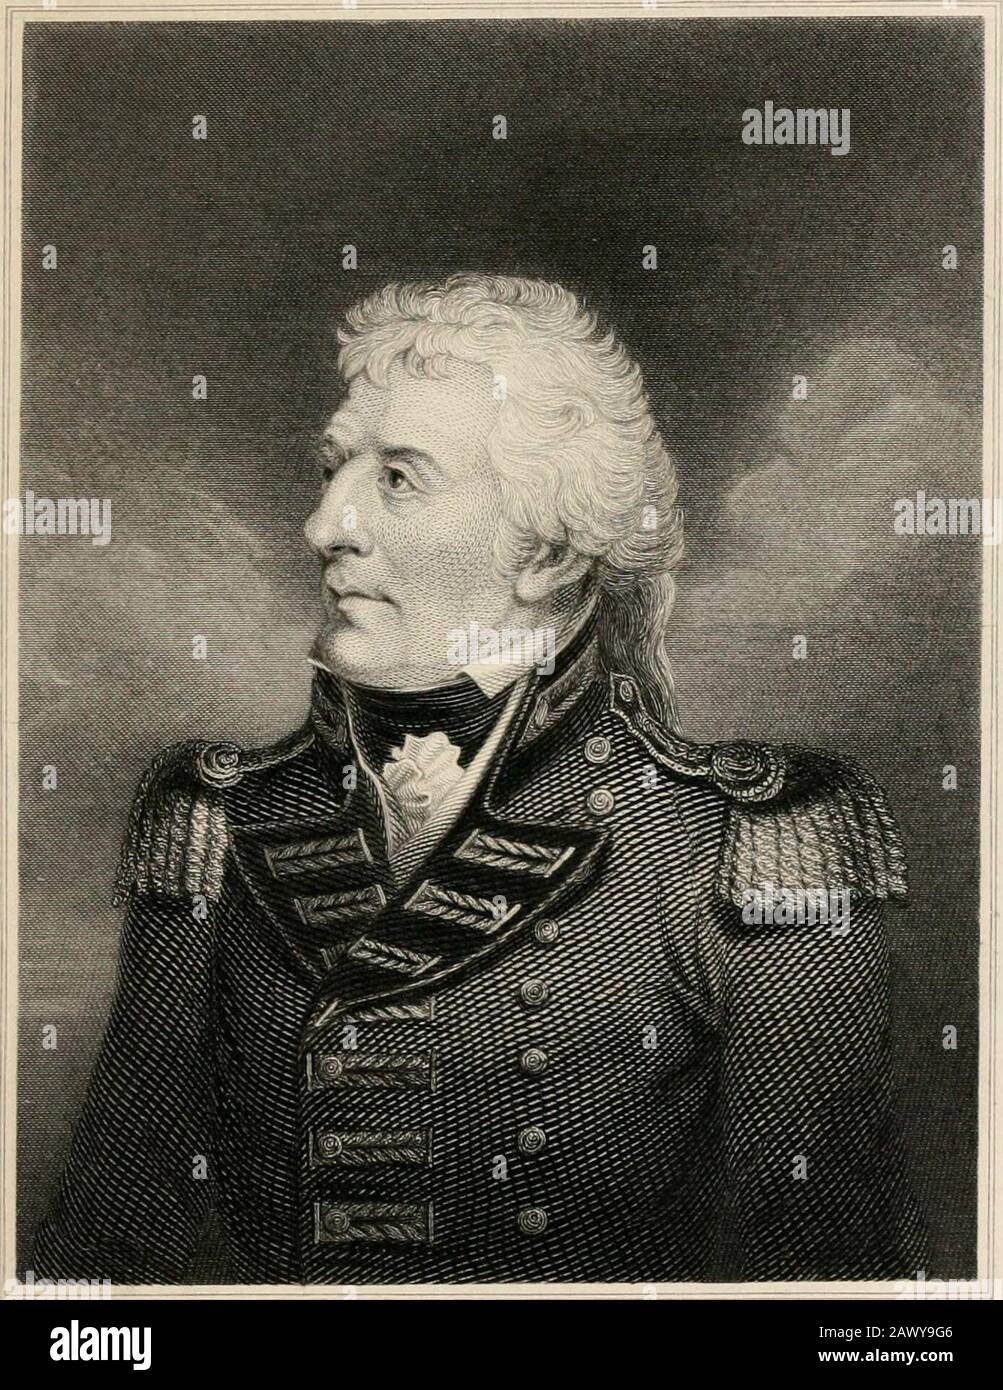 Geschichte der irischen Rebellion im Jahre 1798: Mit Memoiren der union und Emmetts Aufstand im Jahre 1802 . . . . . . . . . . . . . . . . . . . . . . . . . . . . . . . . . . . . . . . . . . . . . . . . . . . . Diesen Umstand konnte ich nie irgendeinen medizinischen Mann dazu bringen, mir die geringste Exjdanation von zu geben. Ich setzte mich gegen General Hunter durch, der dann in Wexford befehligte, um die drei Köpfe zu erleiden, die niedergenommen und begraben werden sollten. Wenn eine Erhöhung zum Befehl jemals während seiner kurzen Dauer von Angst, Enttäuschung und unverfügbarem Bedauern übertrieben wurde und einem aufmunternden Impuls bei der Annahme dessen nachgab, war Armen Harveys das kurze und Stockfoto